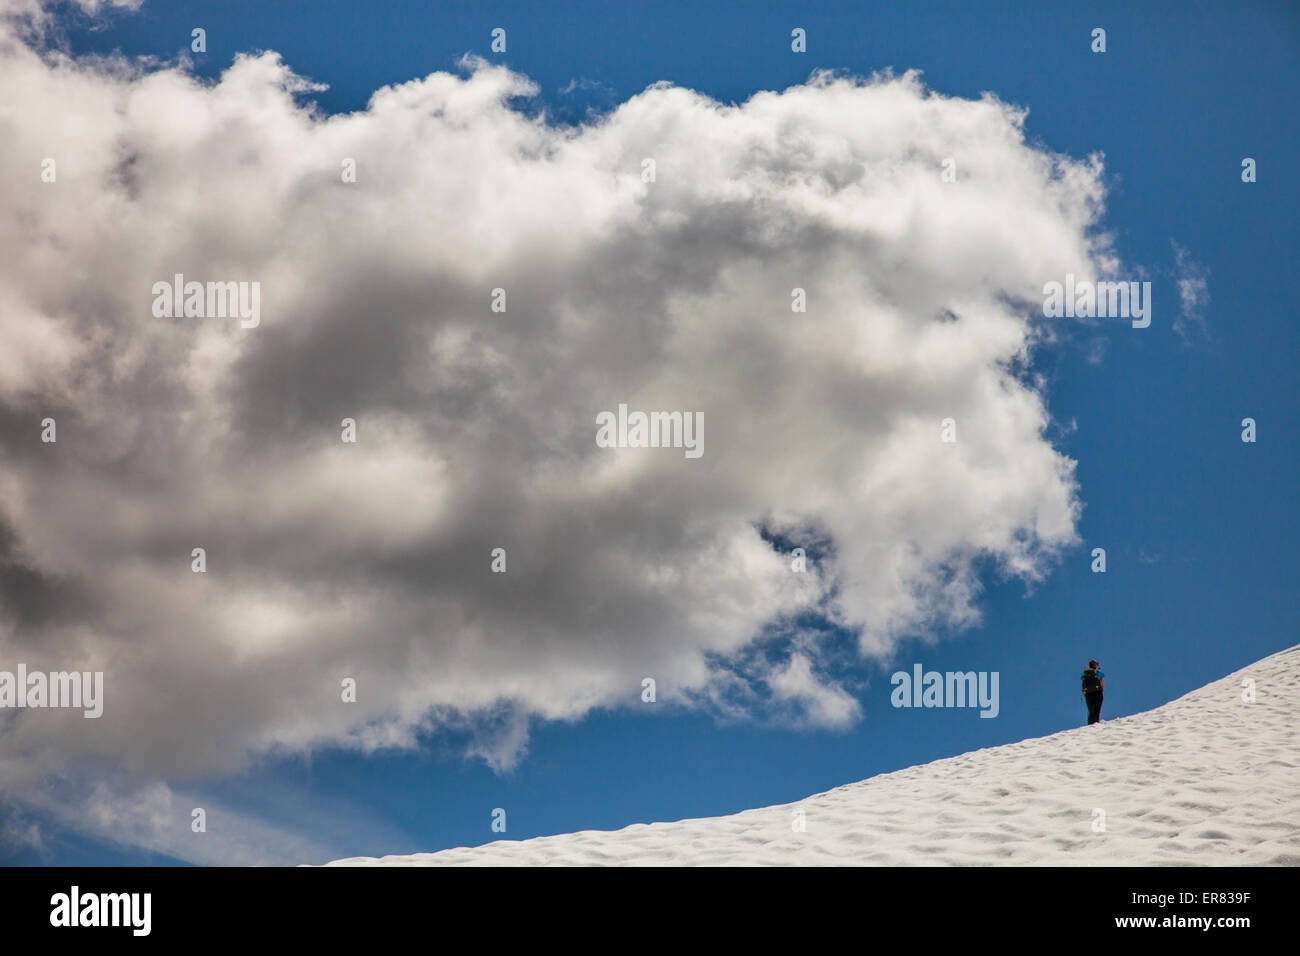 Ein Bergsteiger kreuzt ein Schneefeld unterhalb einer großen Wolke. Stockfoto